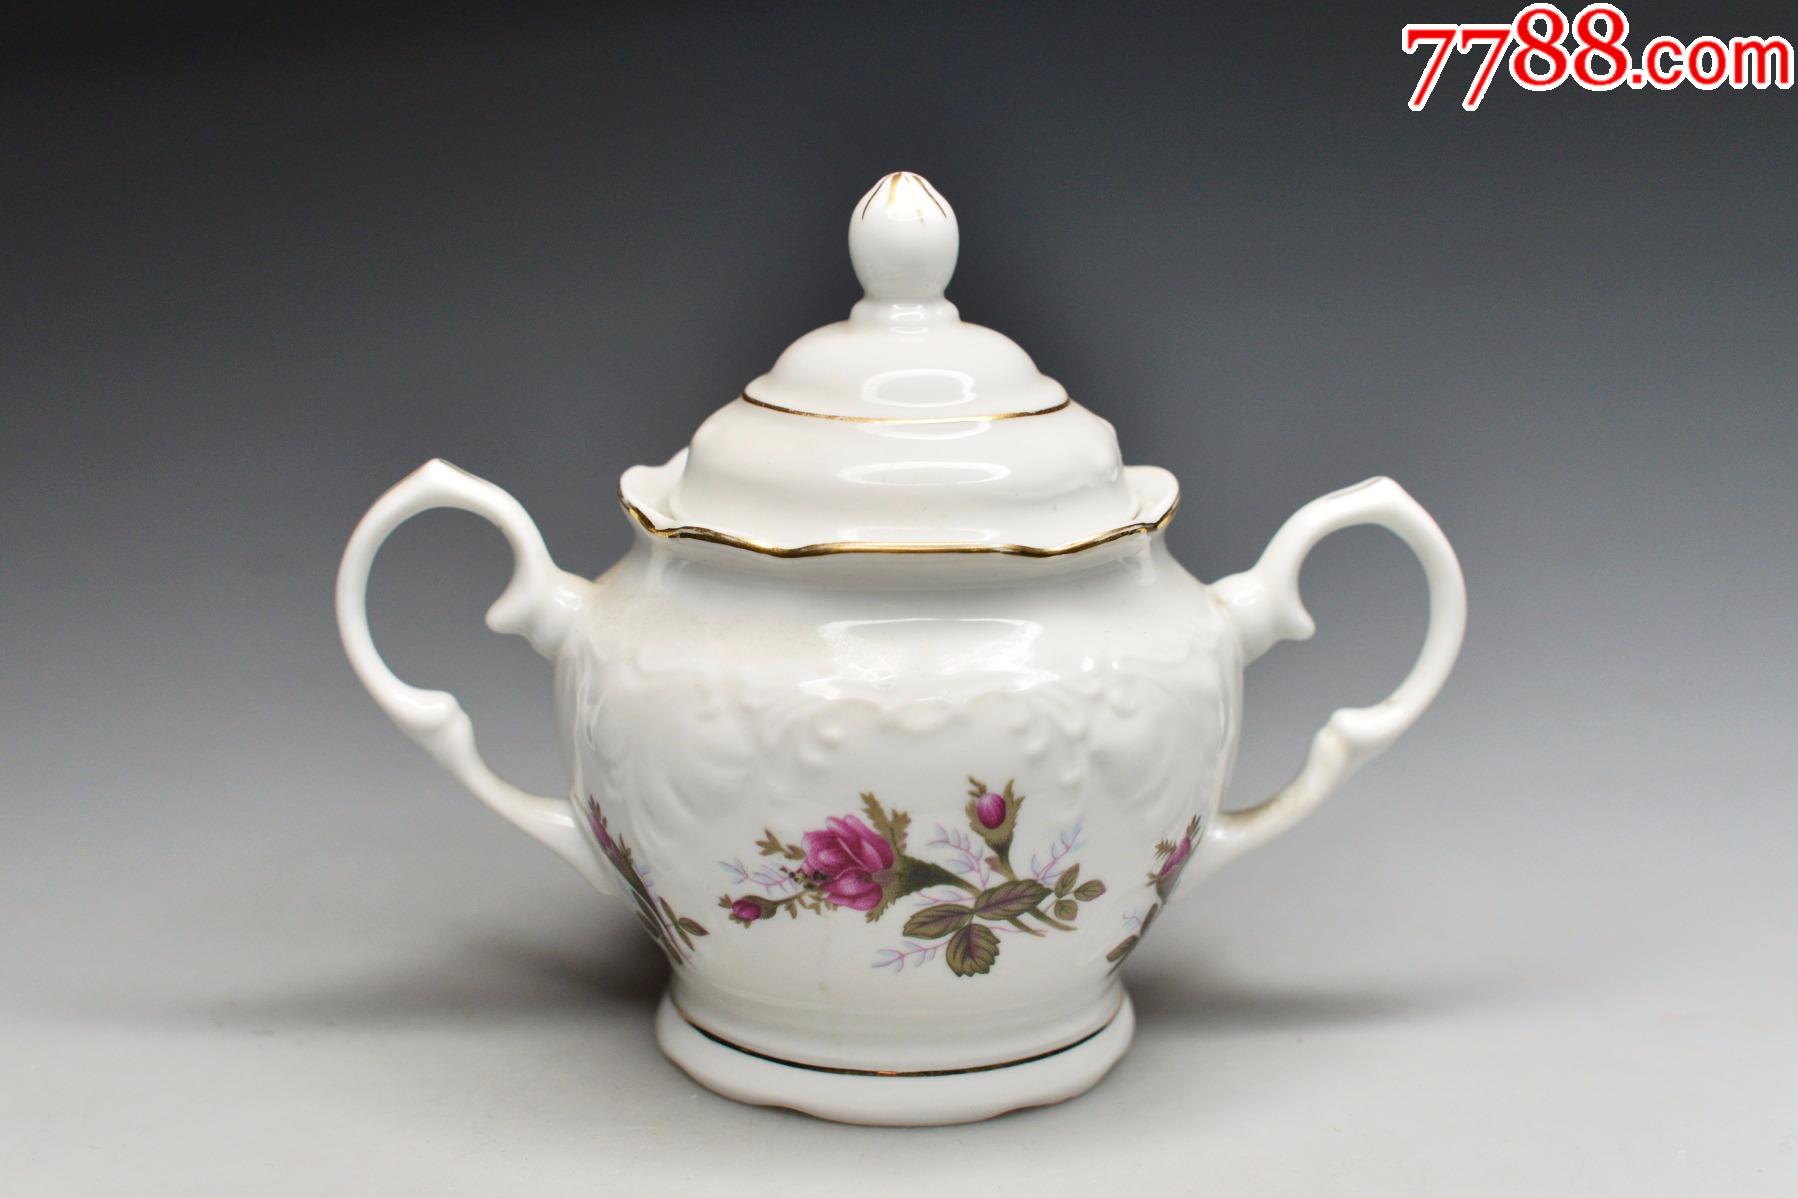 老茶壶唐山瓷白玉瓷70年代80年代文革时期老茶具花卉瓷糖罐茶叶罐